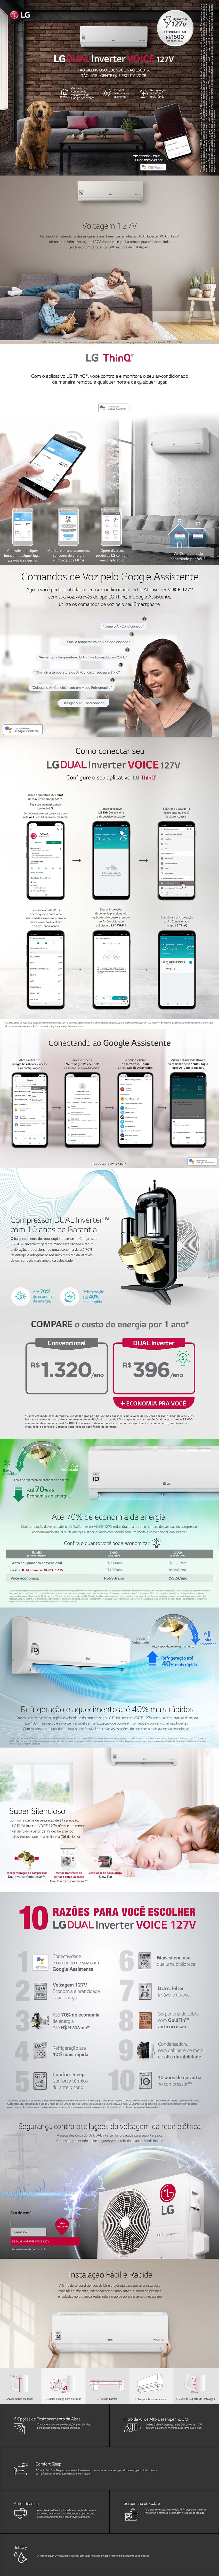 Ar-Condicionado LG Dual Inverter Voice 127V